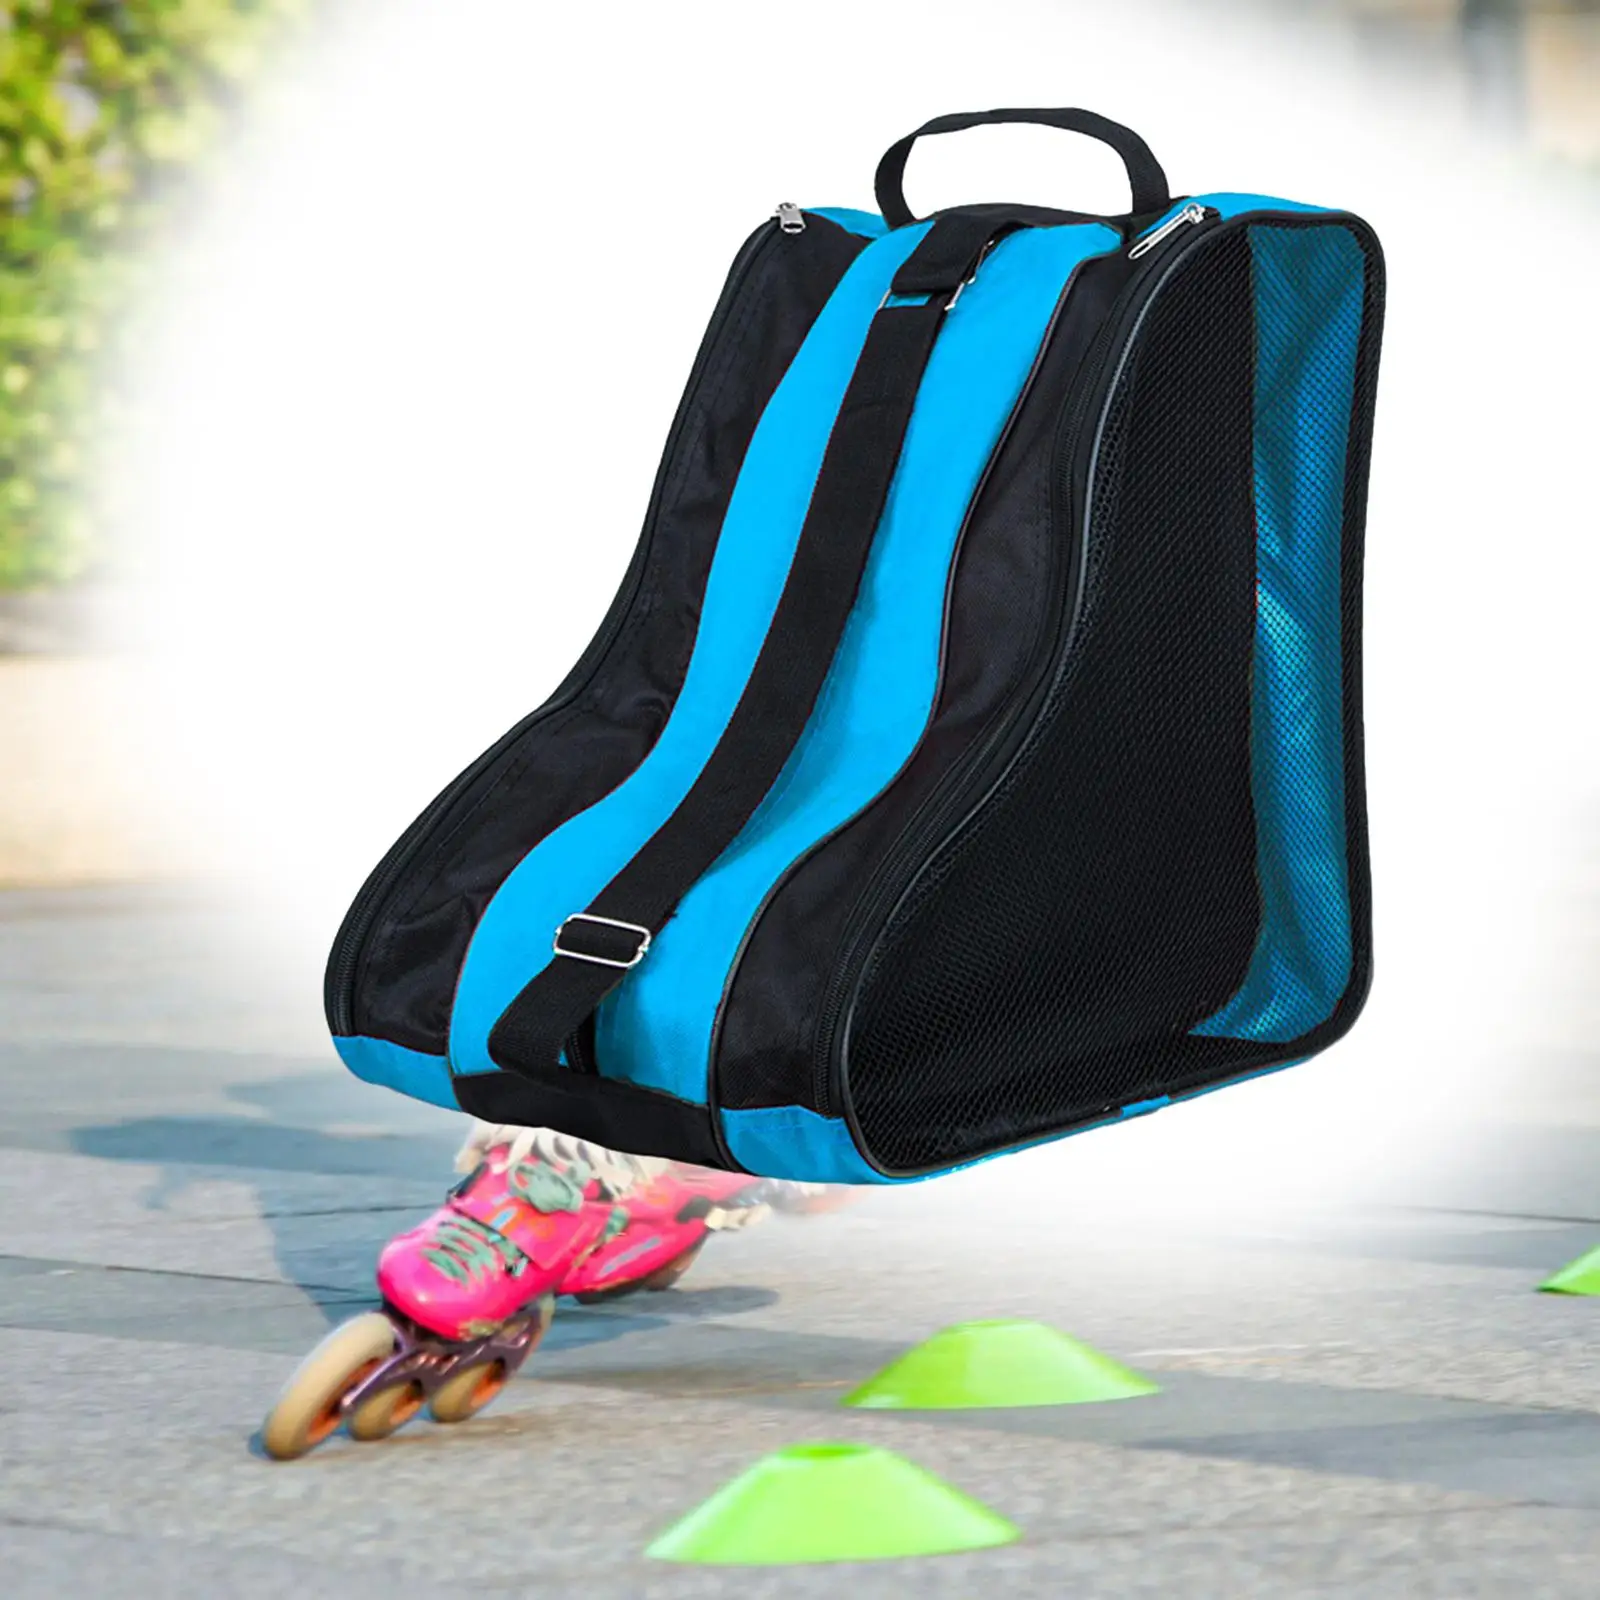 Roller Skate Bag with Adjustable Shoulder Strap Lightweight Durable Portable Handbag for Quad Skates Figure Skates Inline Skates